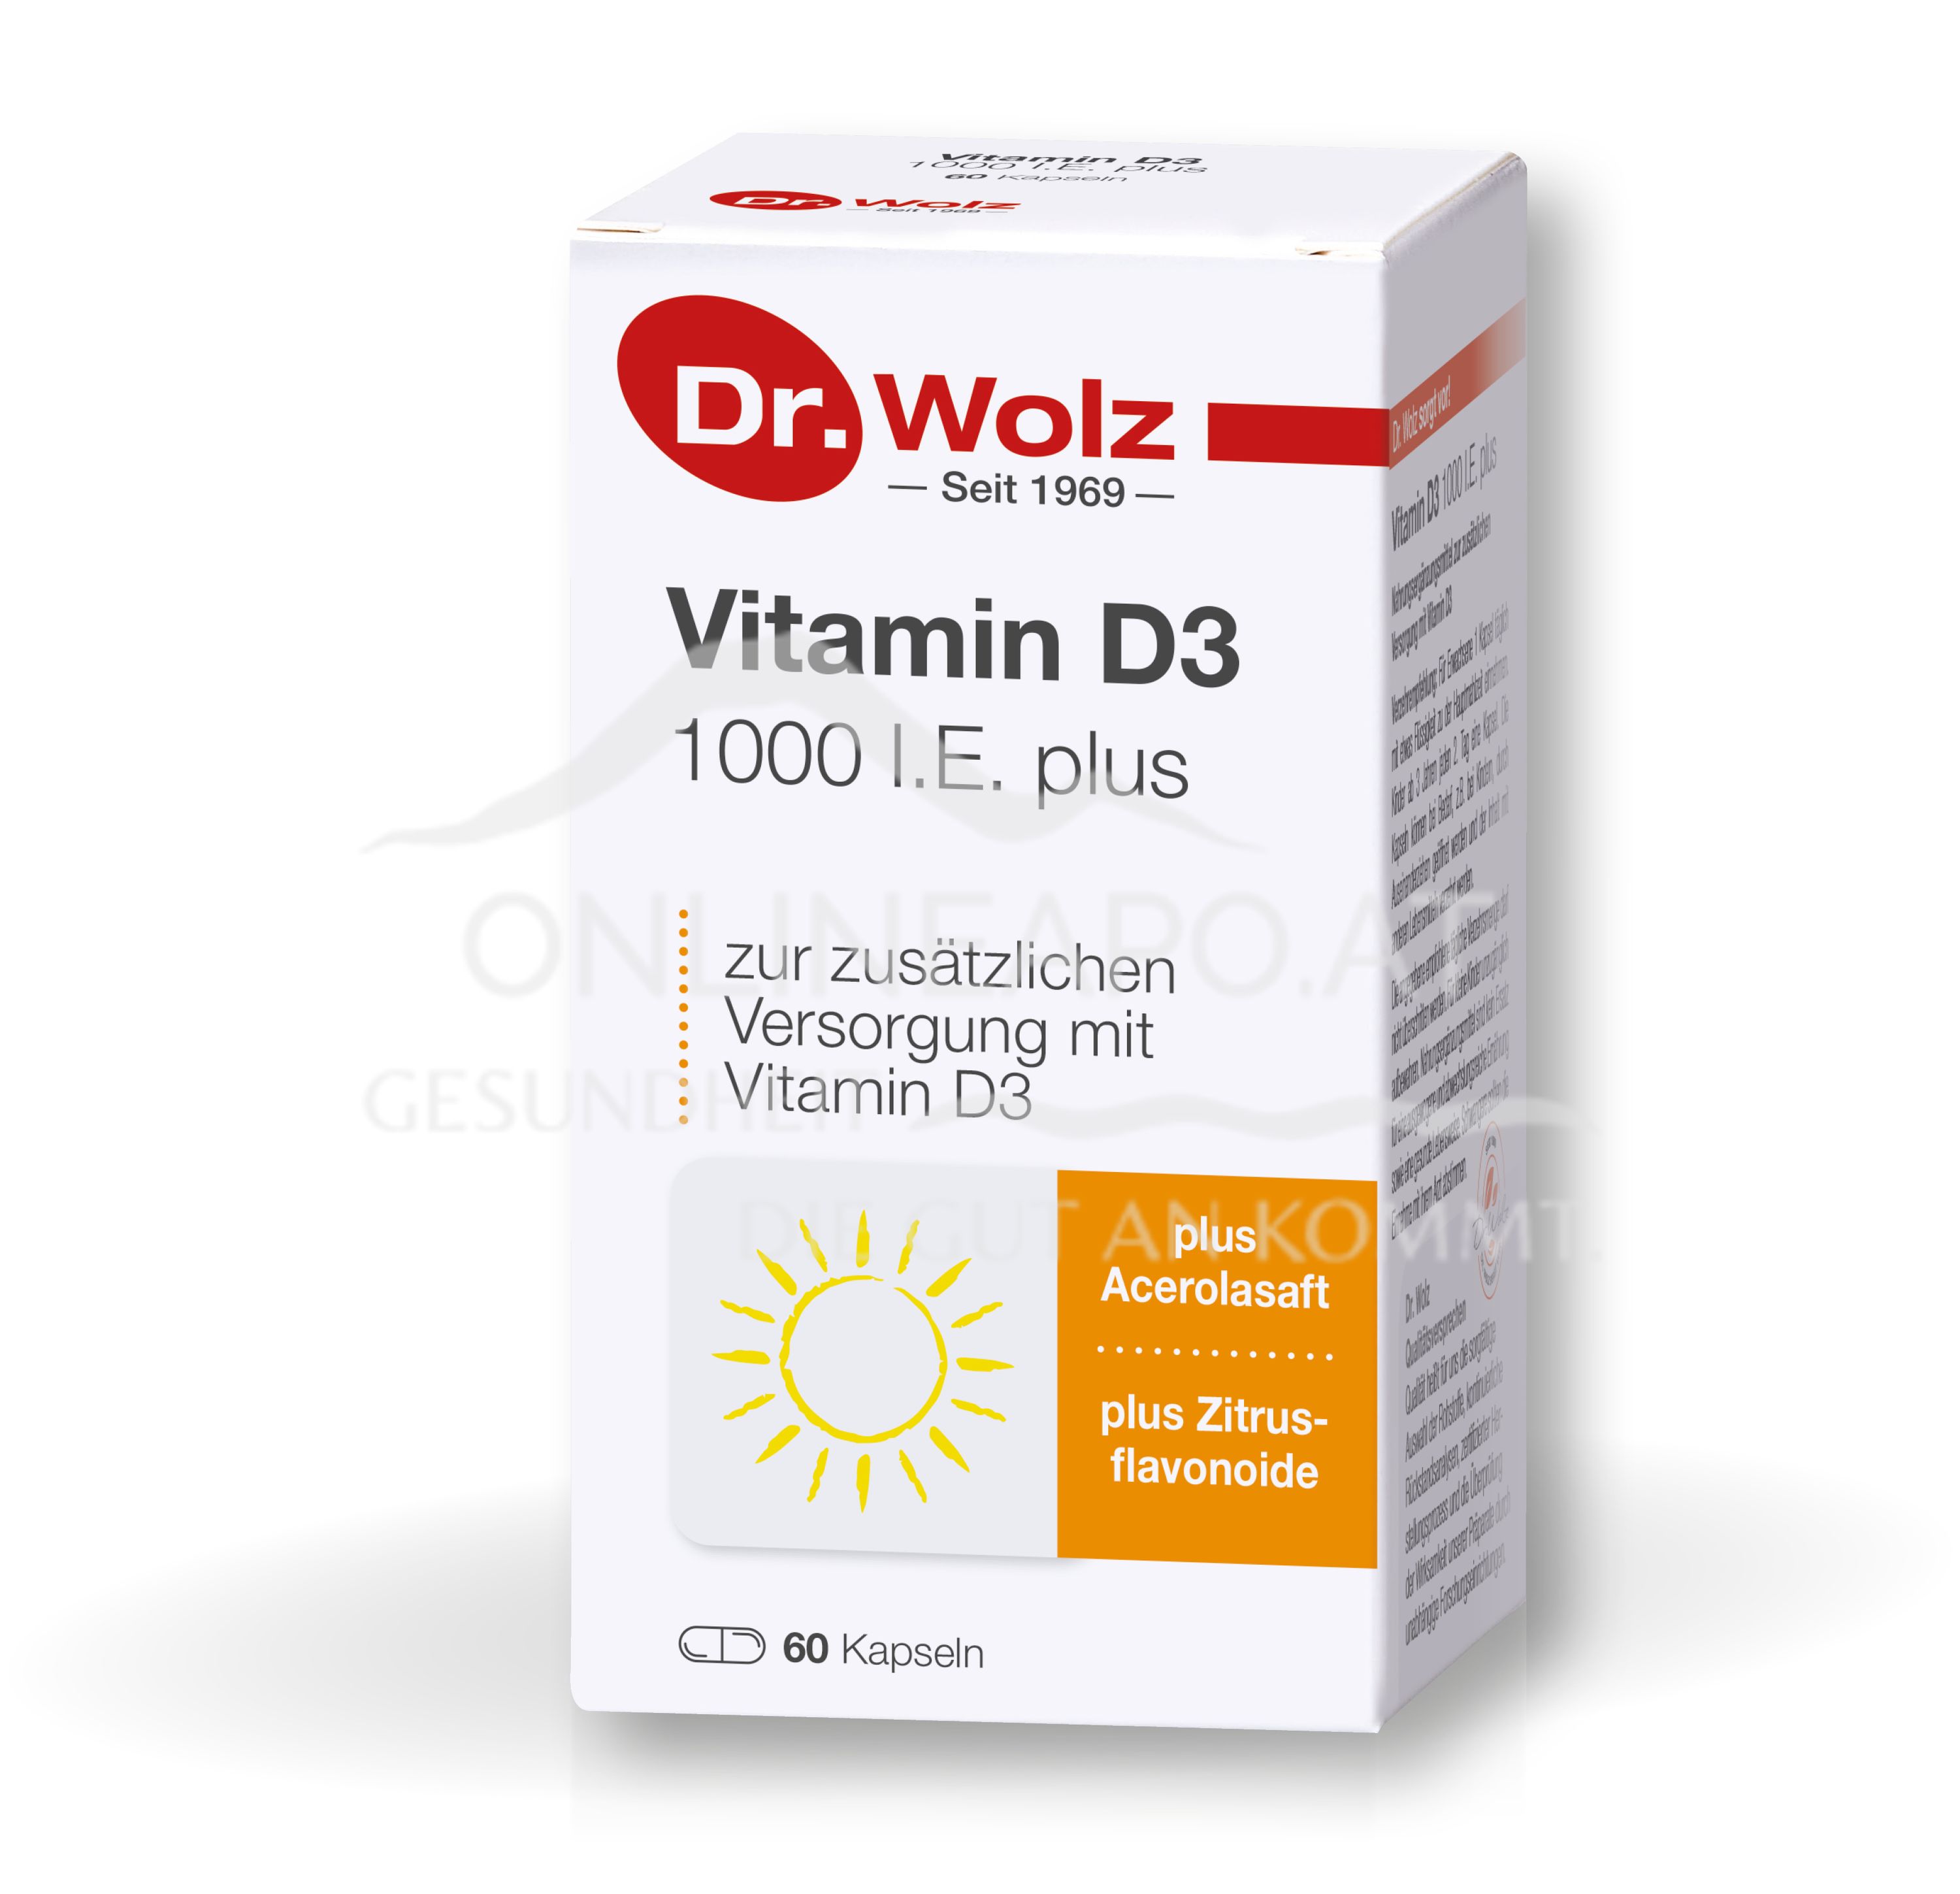 Dr. Wolz Vitamin D3 1000 I.E. plus Kapseln